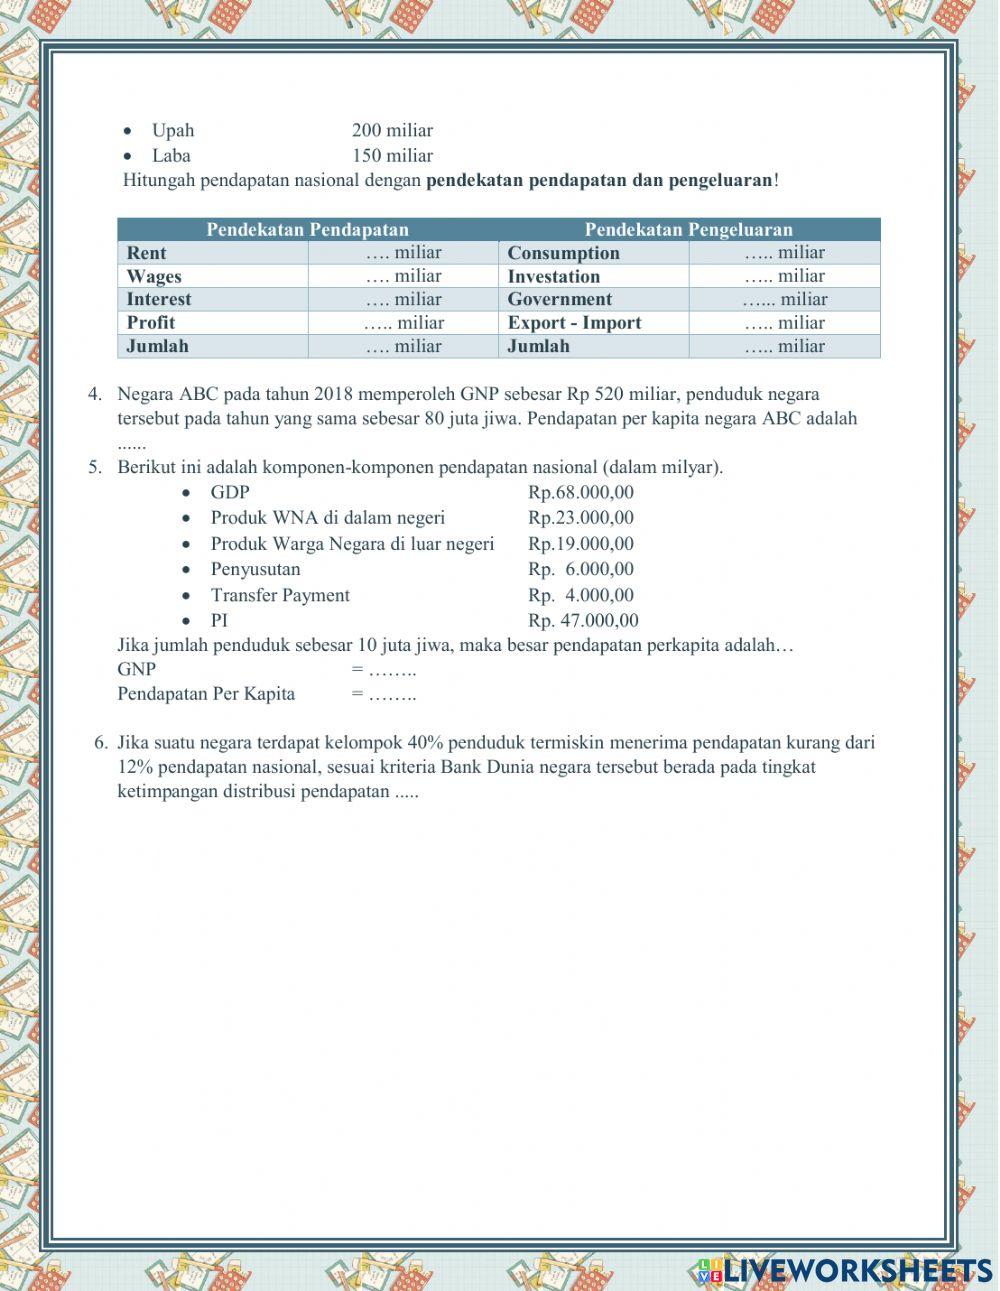 Tugas Harian 2 (Metode Perhitungan Pendapatan Nasional, Pendapatan Per Kapita, Distribusi Pendapatan)